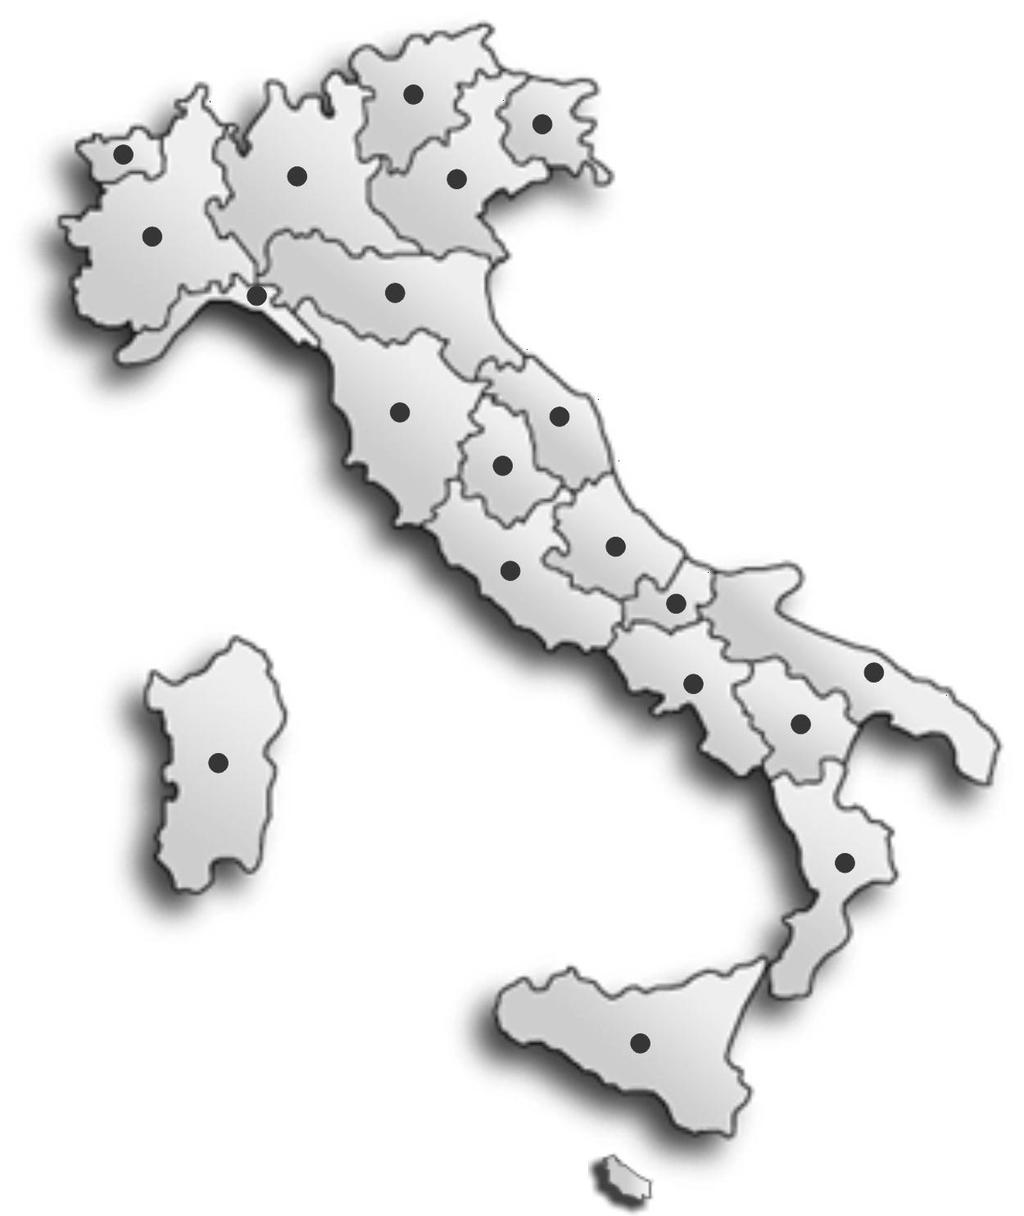 La situazione in Italia Centri prova riconosciuti e tecnici abilitati Centri Prova Tecnici abilitati 0-0 19-31 4 5 (TN e BZ) 3-13 36-154 nd 1-6 2-2 17-15 17-46 nd